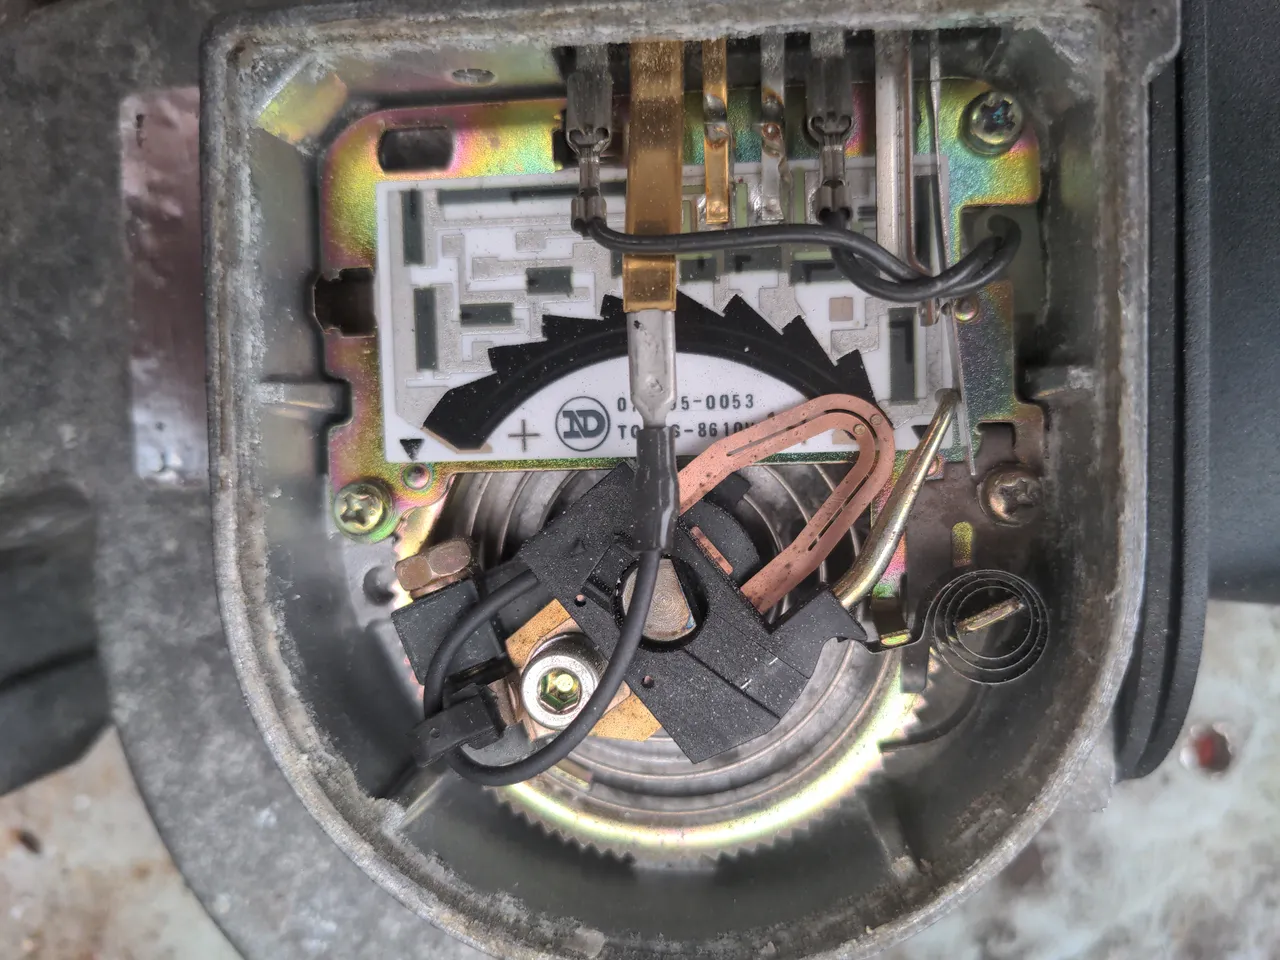 Internals of a 323 GTX air flow meter.